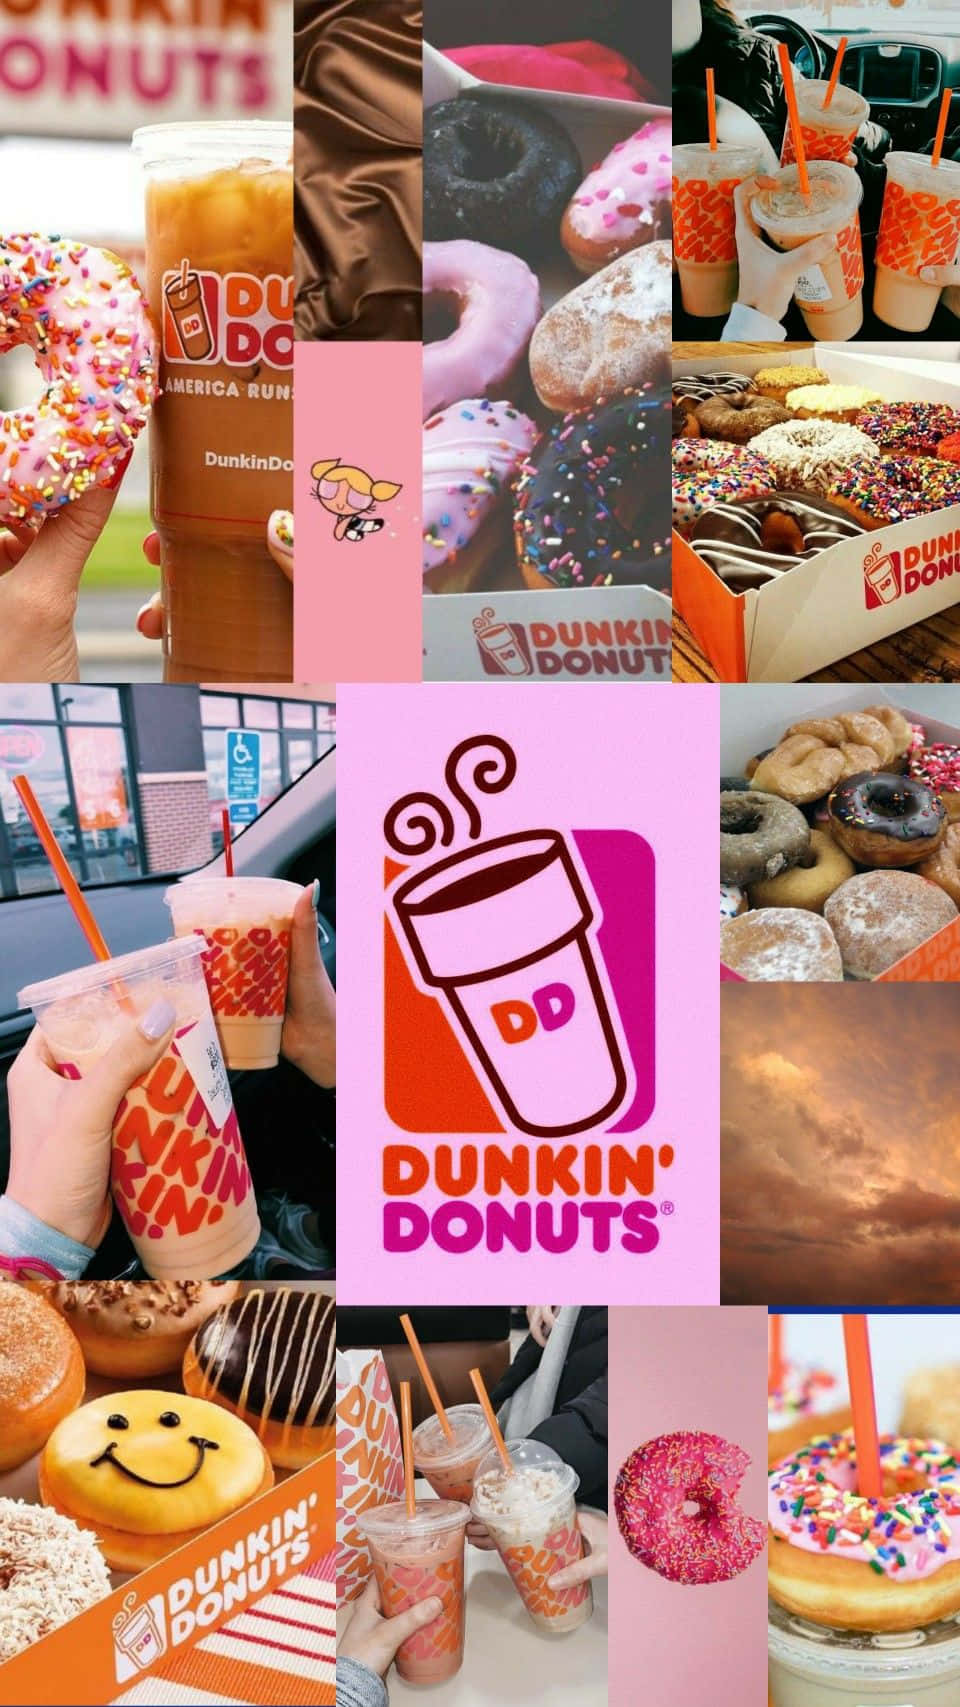 Genießensie Dunkin Donuts Jederzeit!